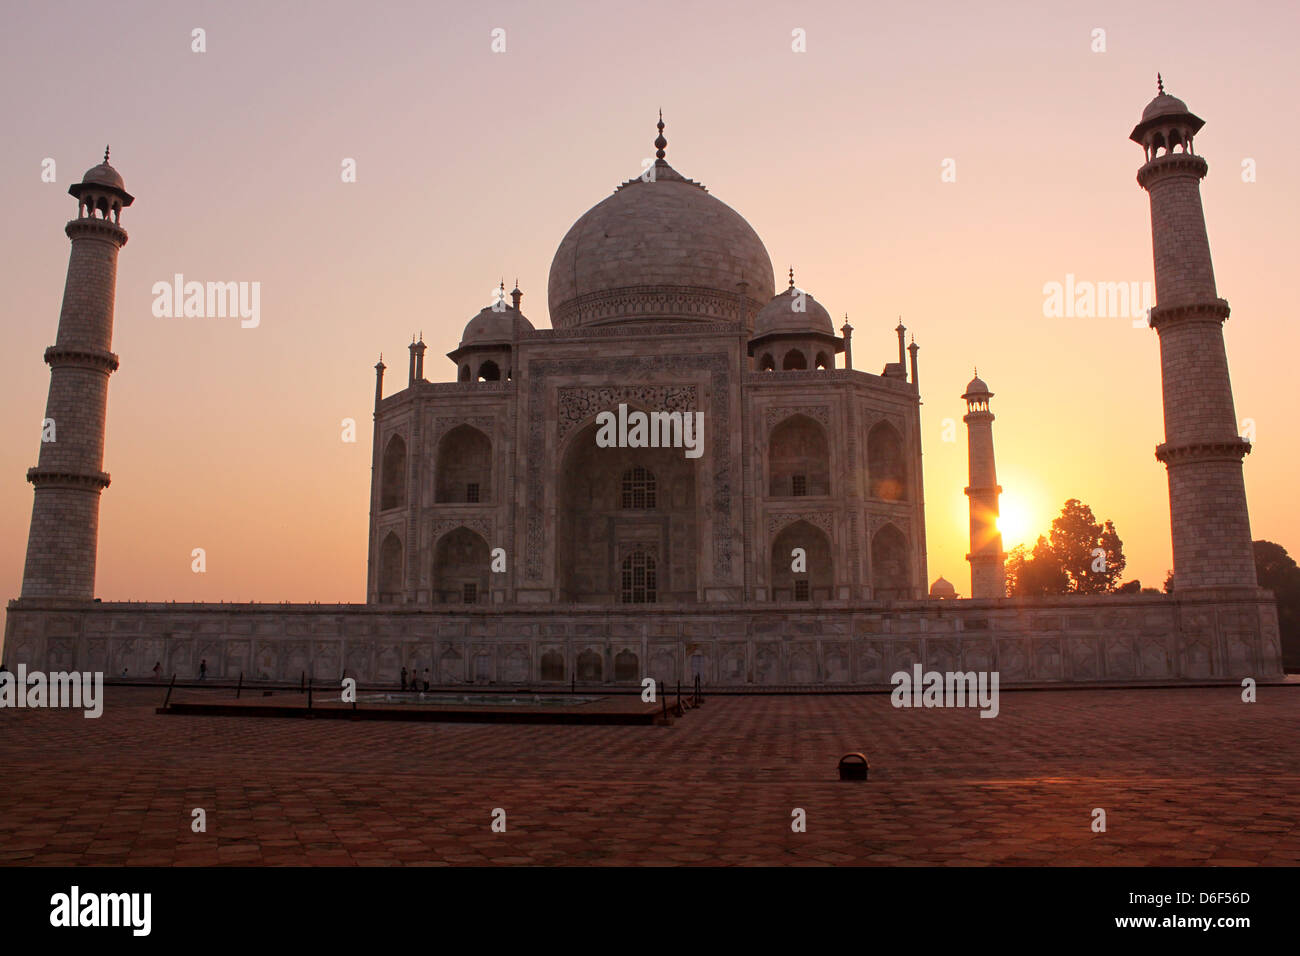 Vue sur le Taj Mahal, site du patrimoine mondial de l'Agra, Uttar Pradesh, Inde Banque D'Images